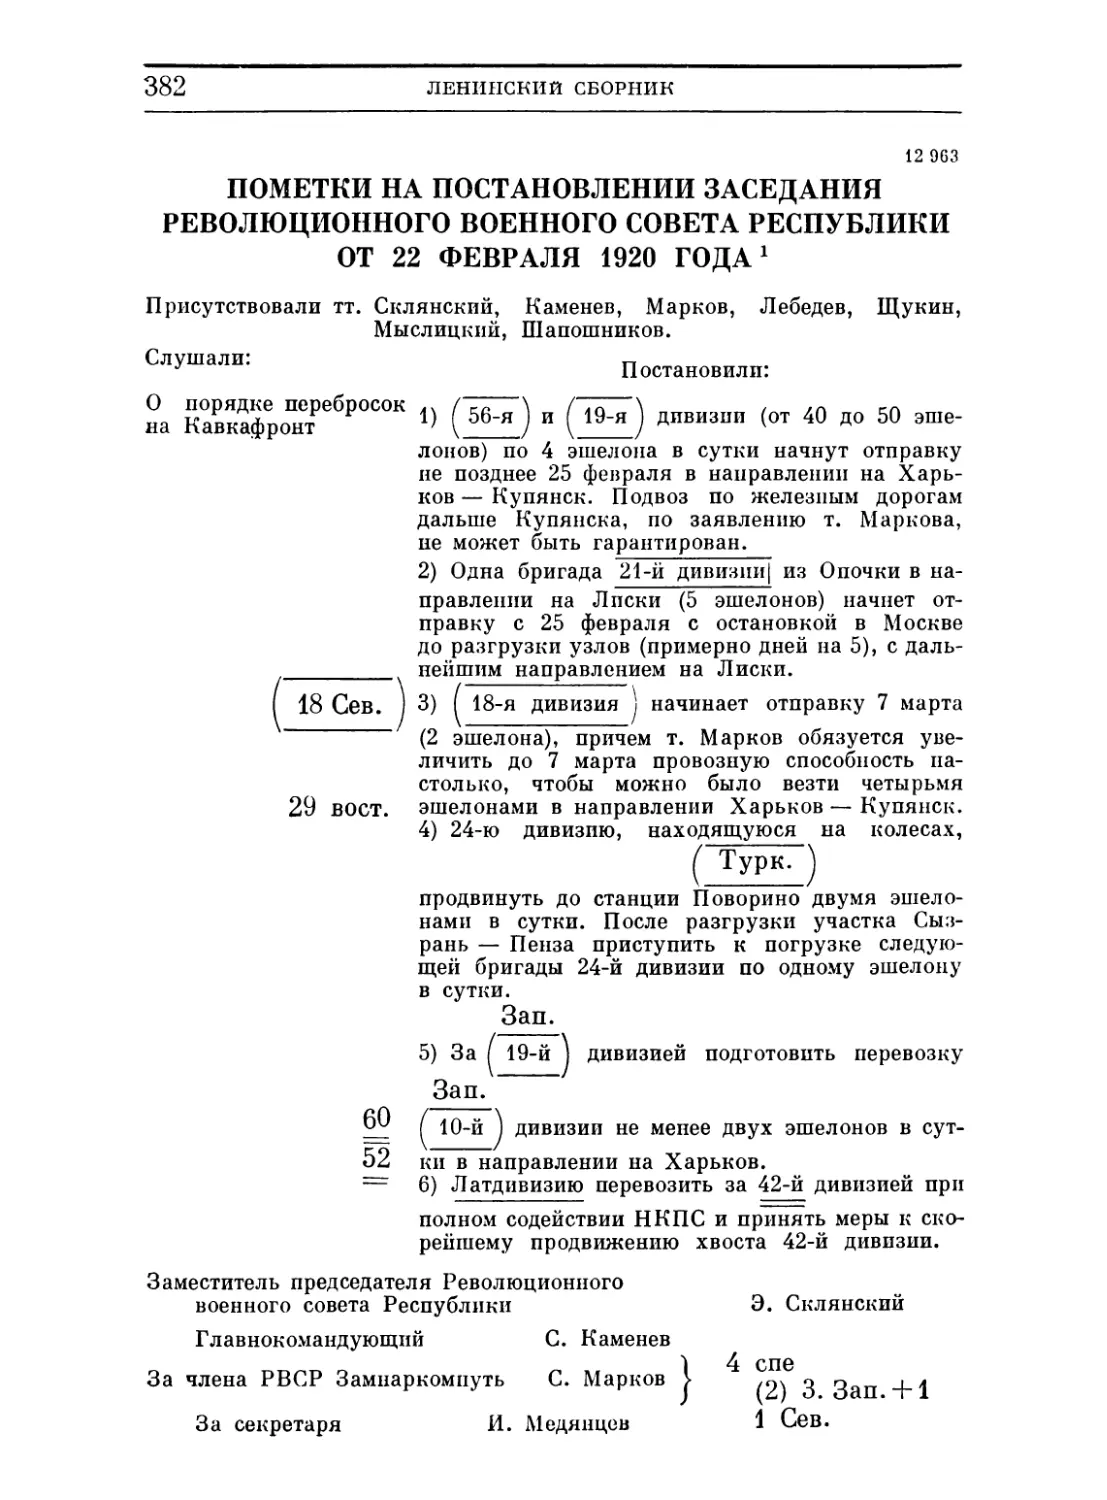 Пометки на постановлении заседания Революционного Военного Совета Республики. 22 февраля 1920 ...........